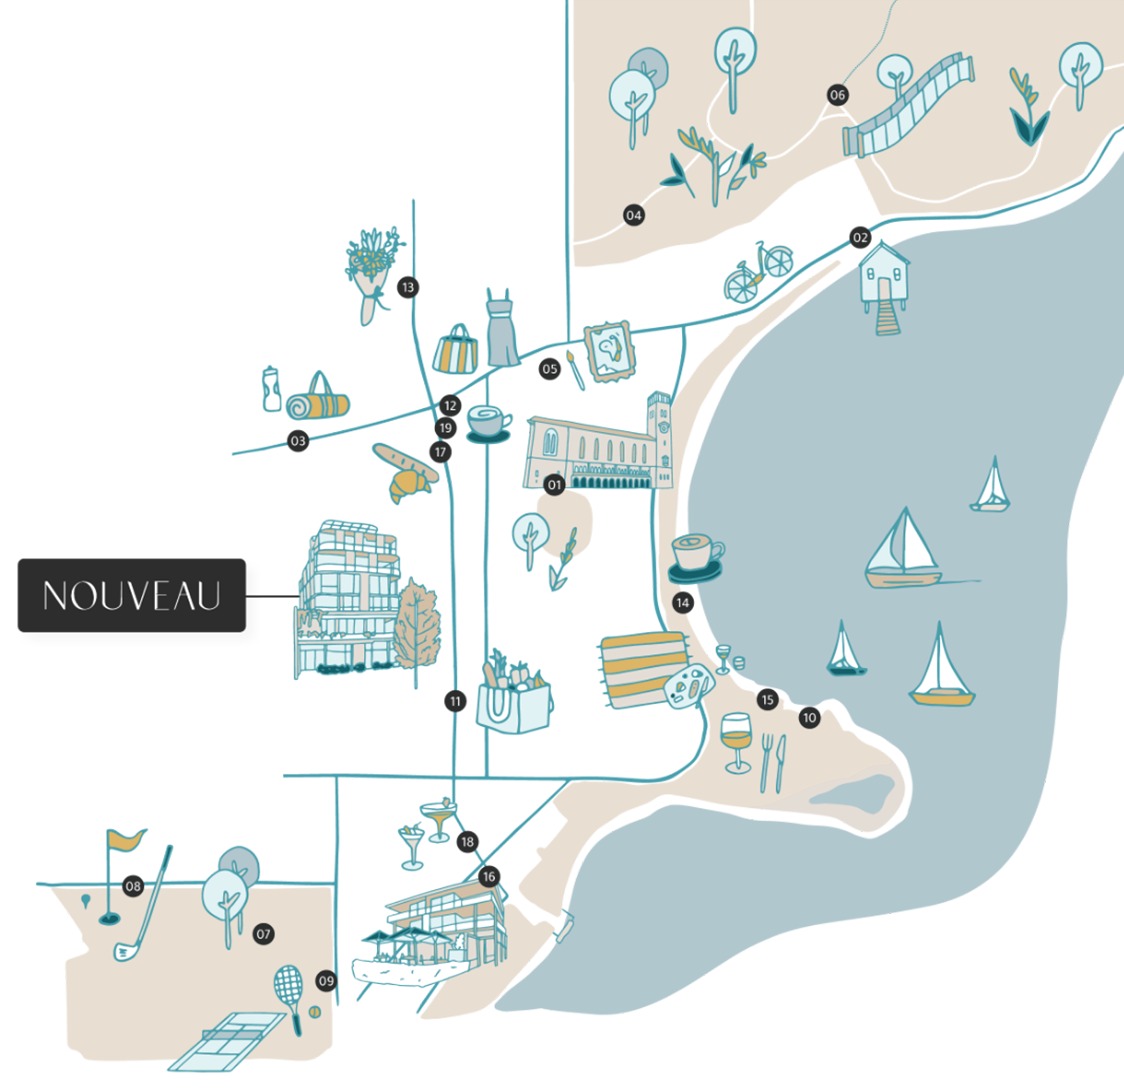 Nouveau illustrated map